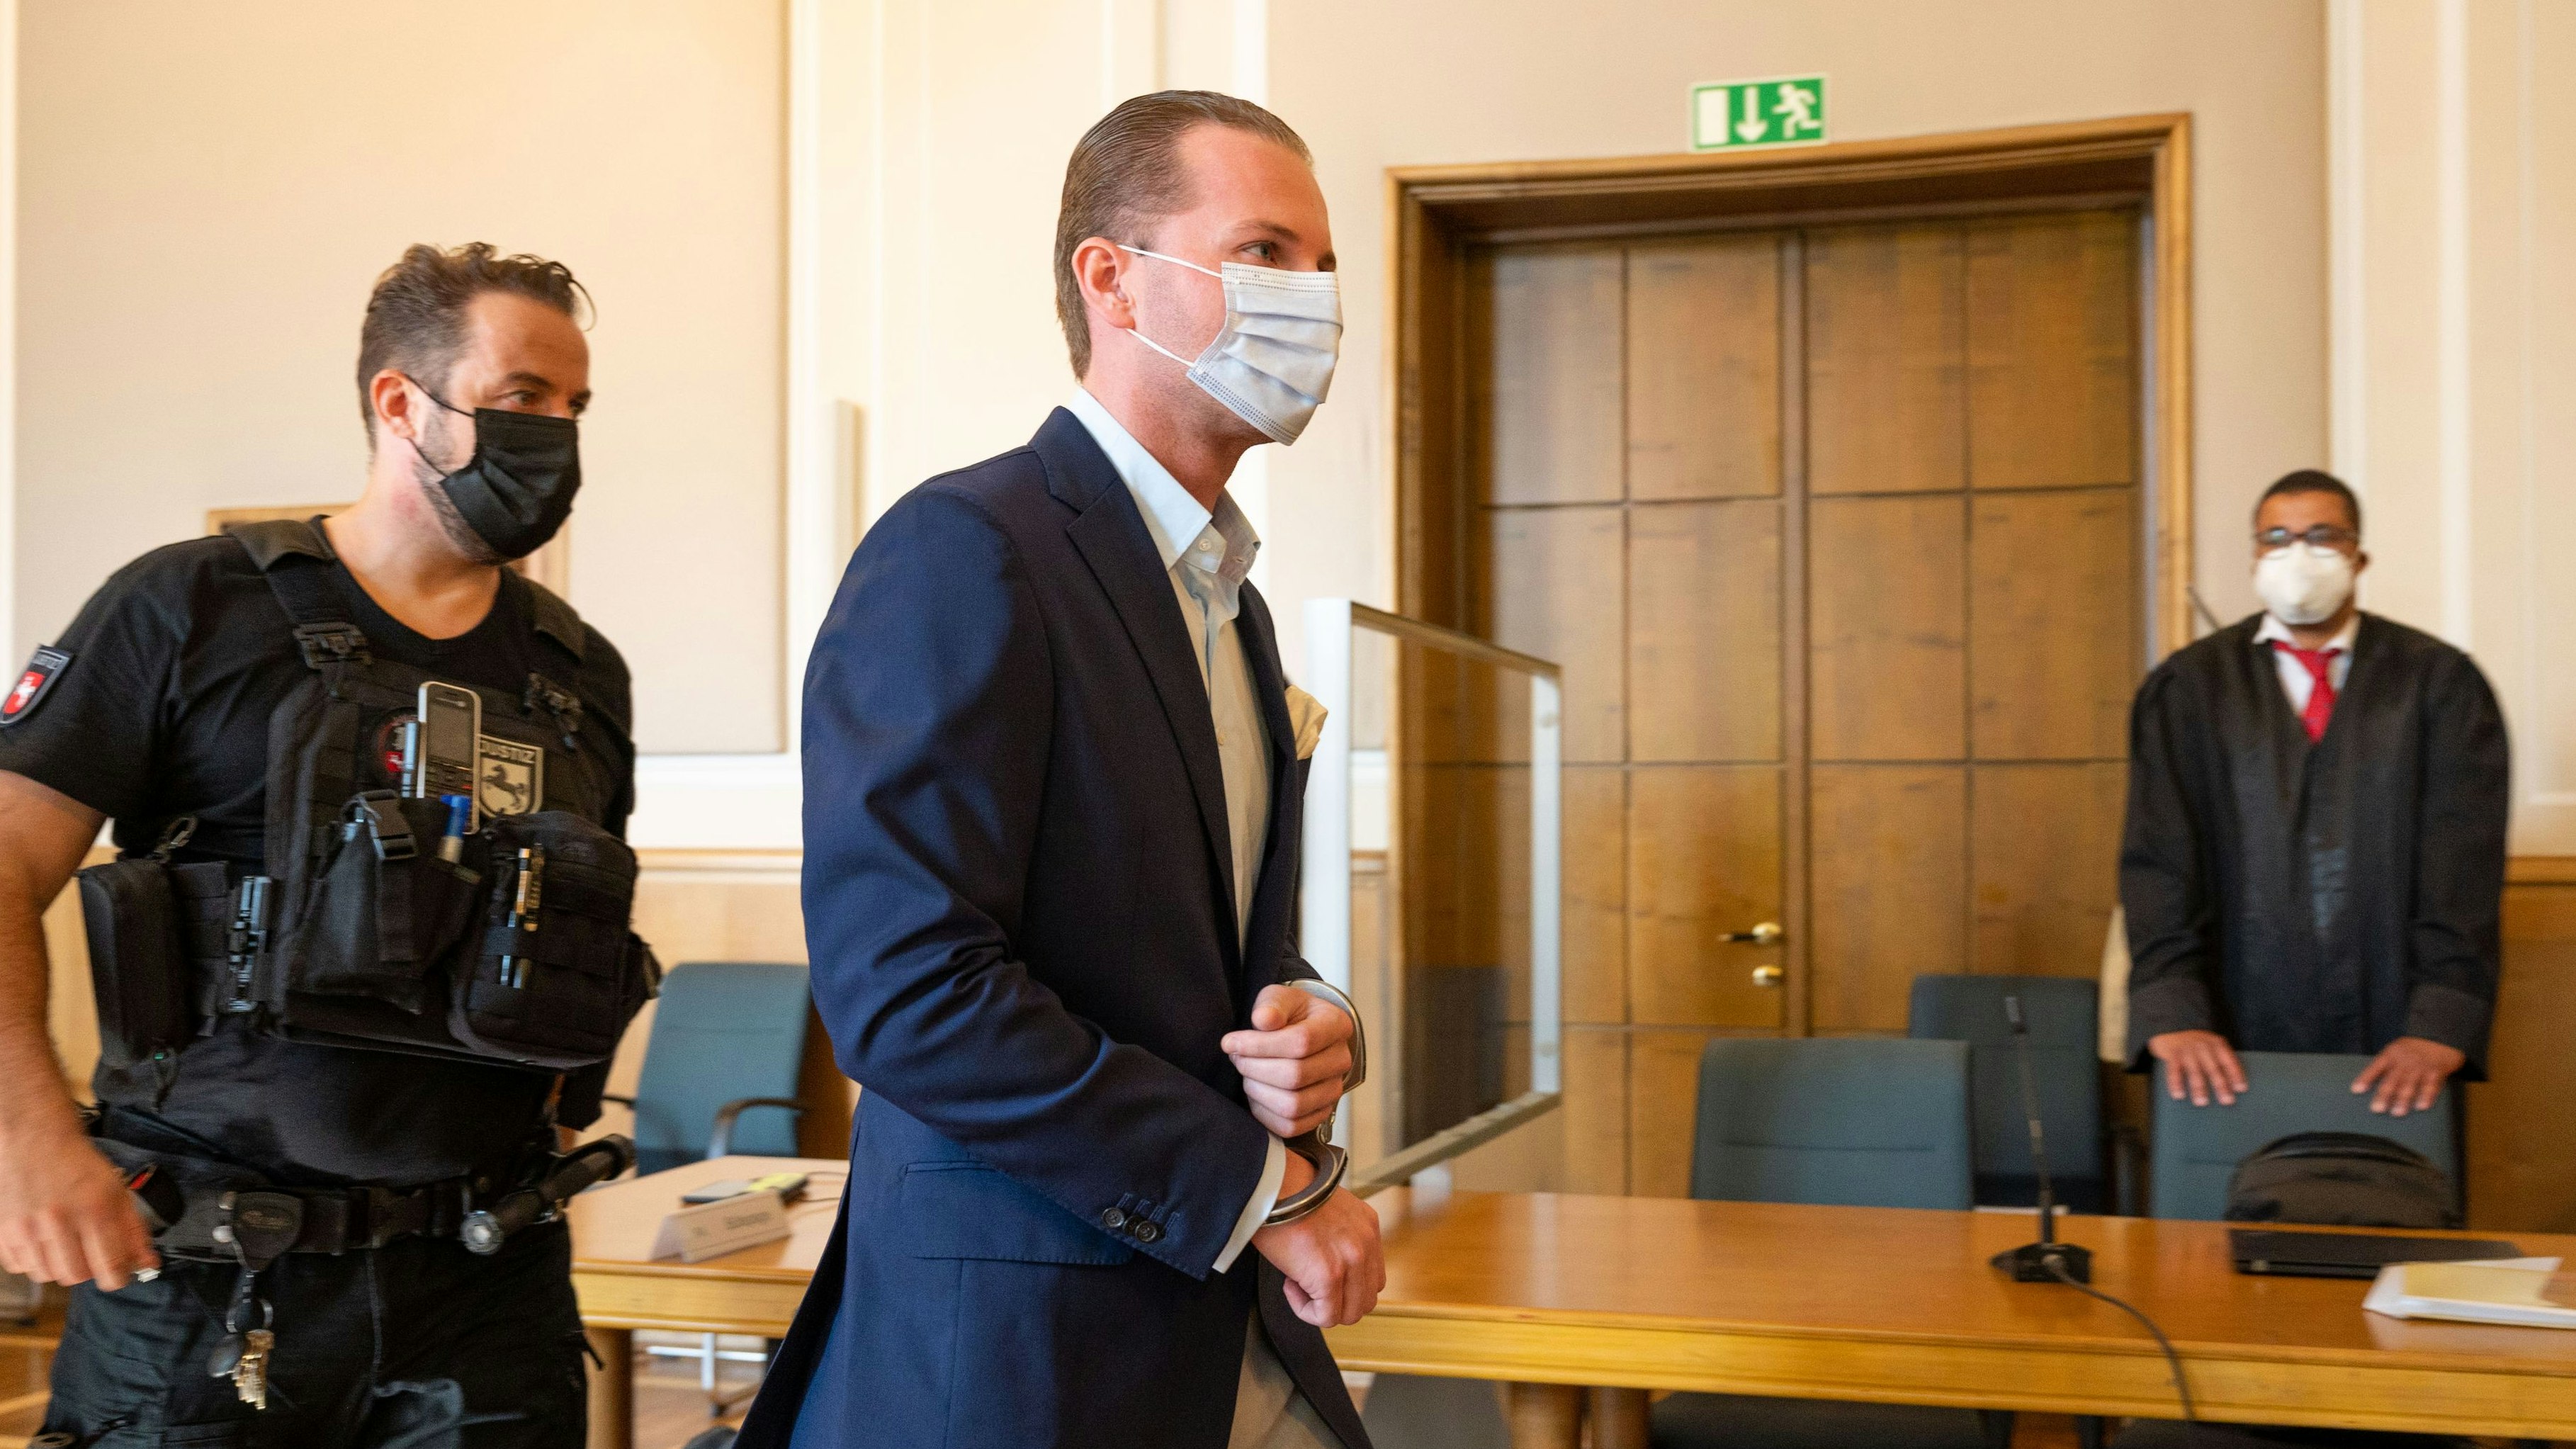 Sakko mit Einstecktuch: Nobel gekleidet, aber in Handschellen wird Hendrik Holt in den Gerichtssaal geführt. Foto: M. Niehues